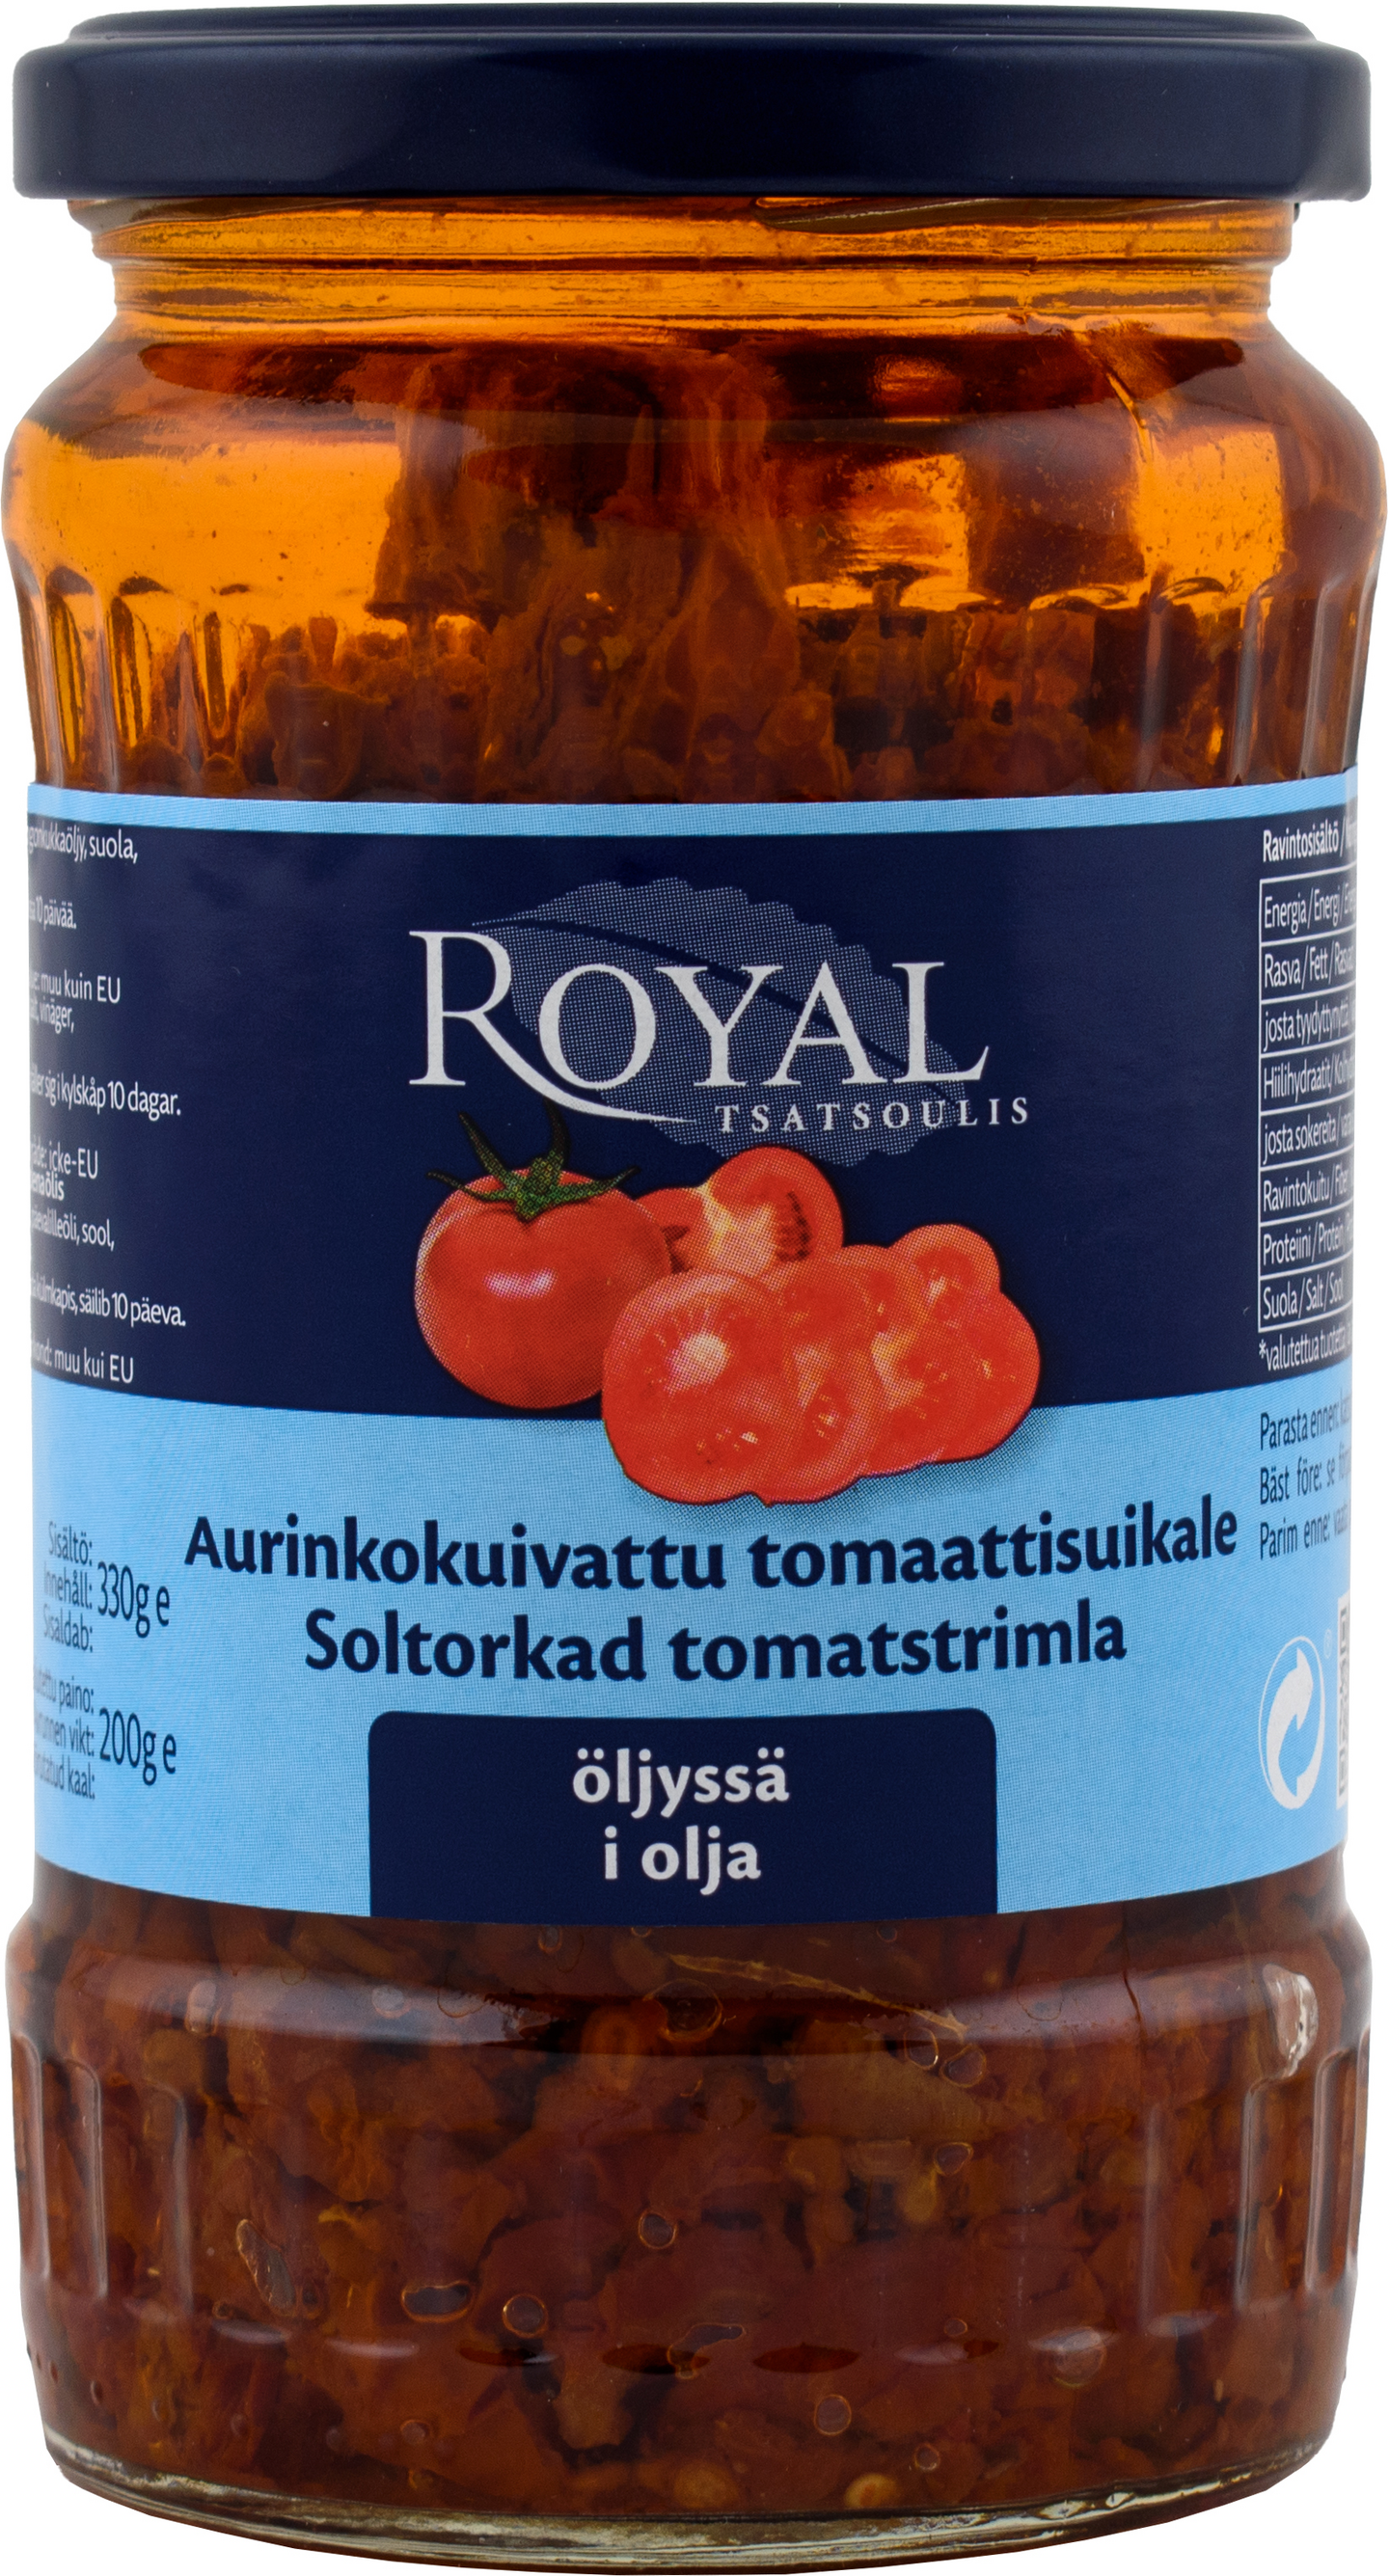 Royal aurinkokuivattu tomaattisuikale öljyssä 330g/200g